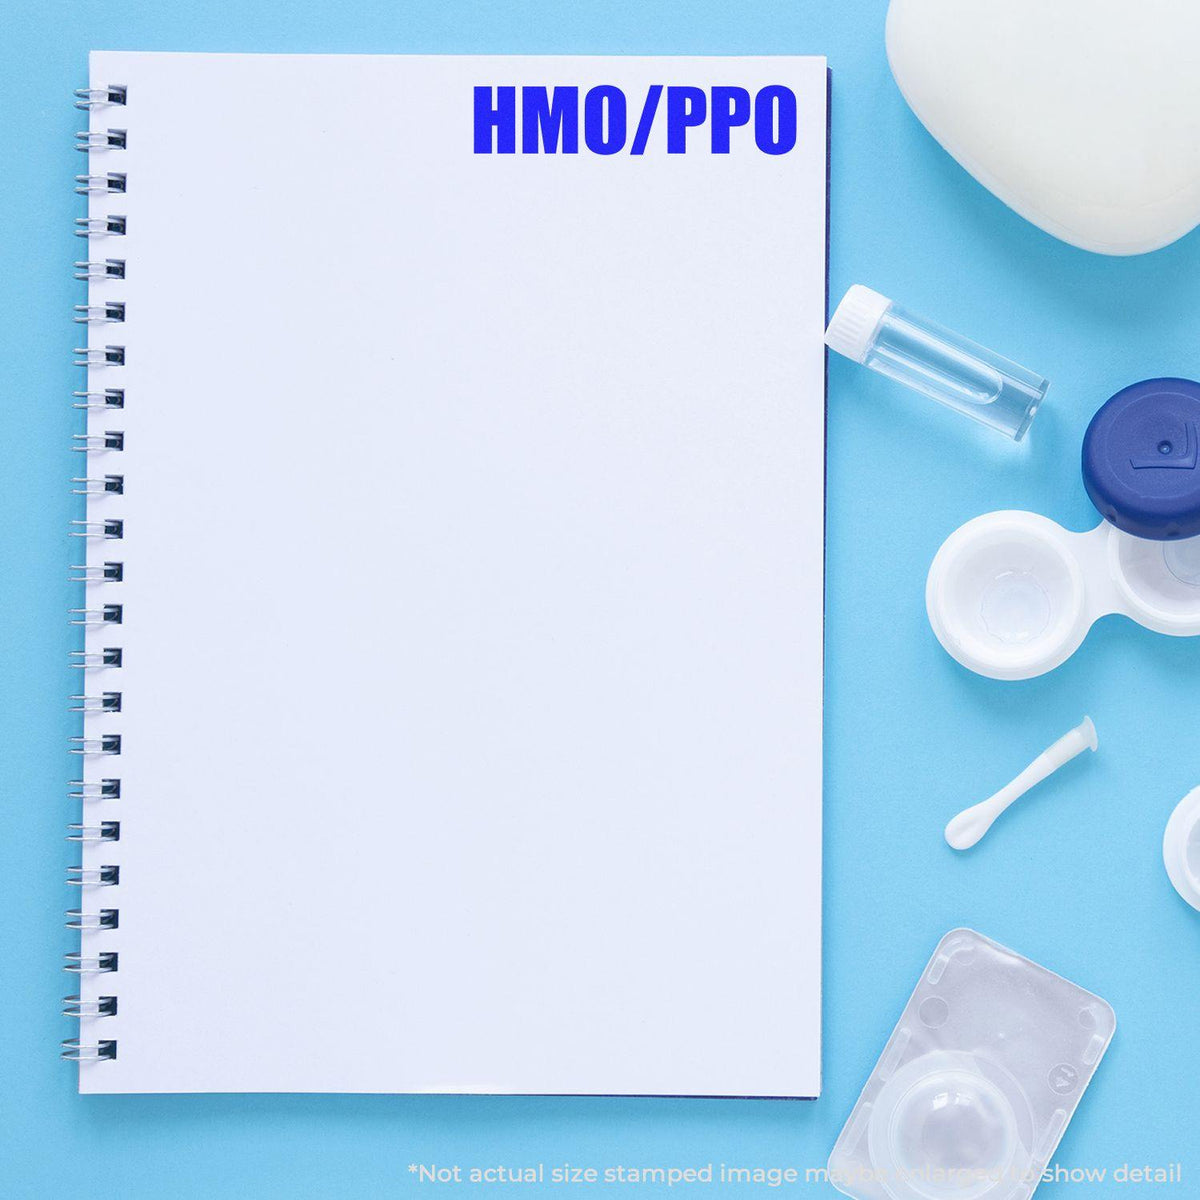 In Use Slim Pre Inked Hmo Ppo Stamp Image